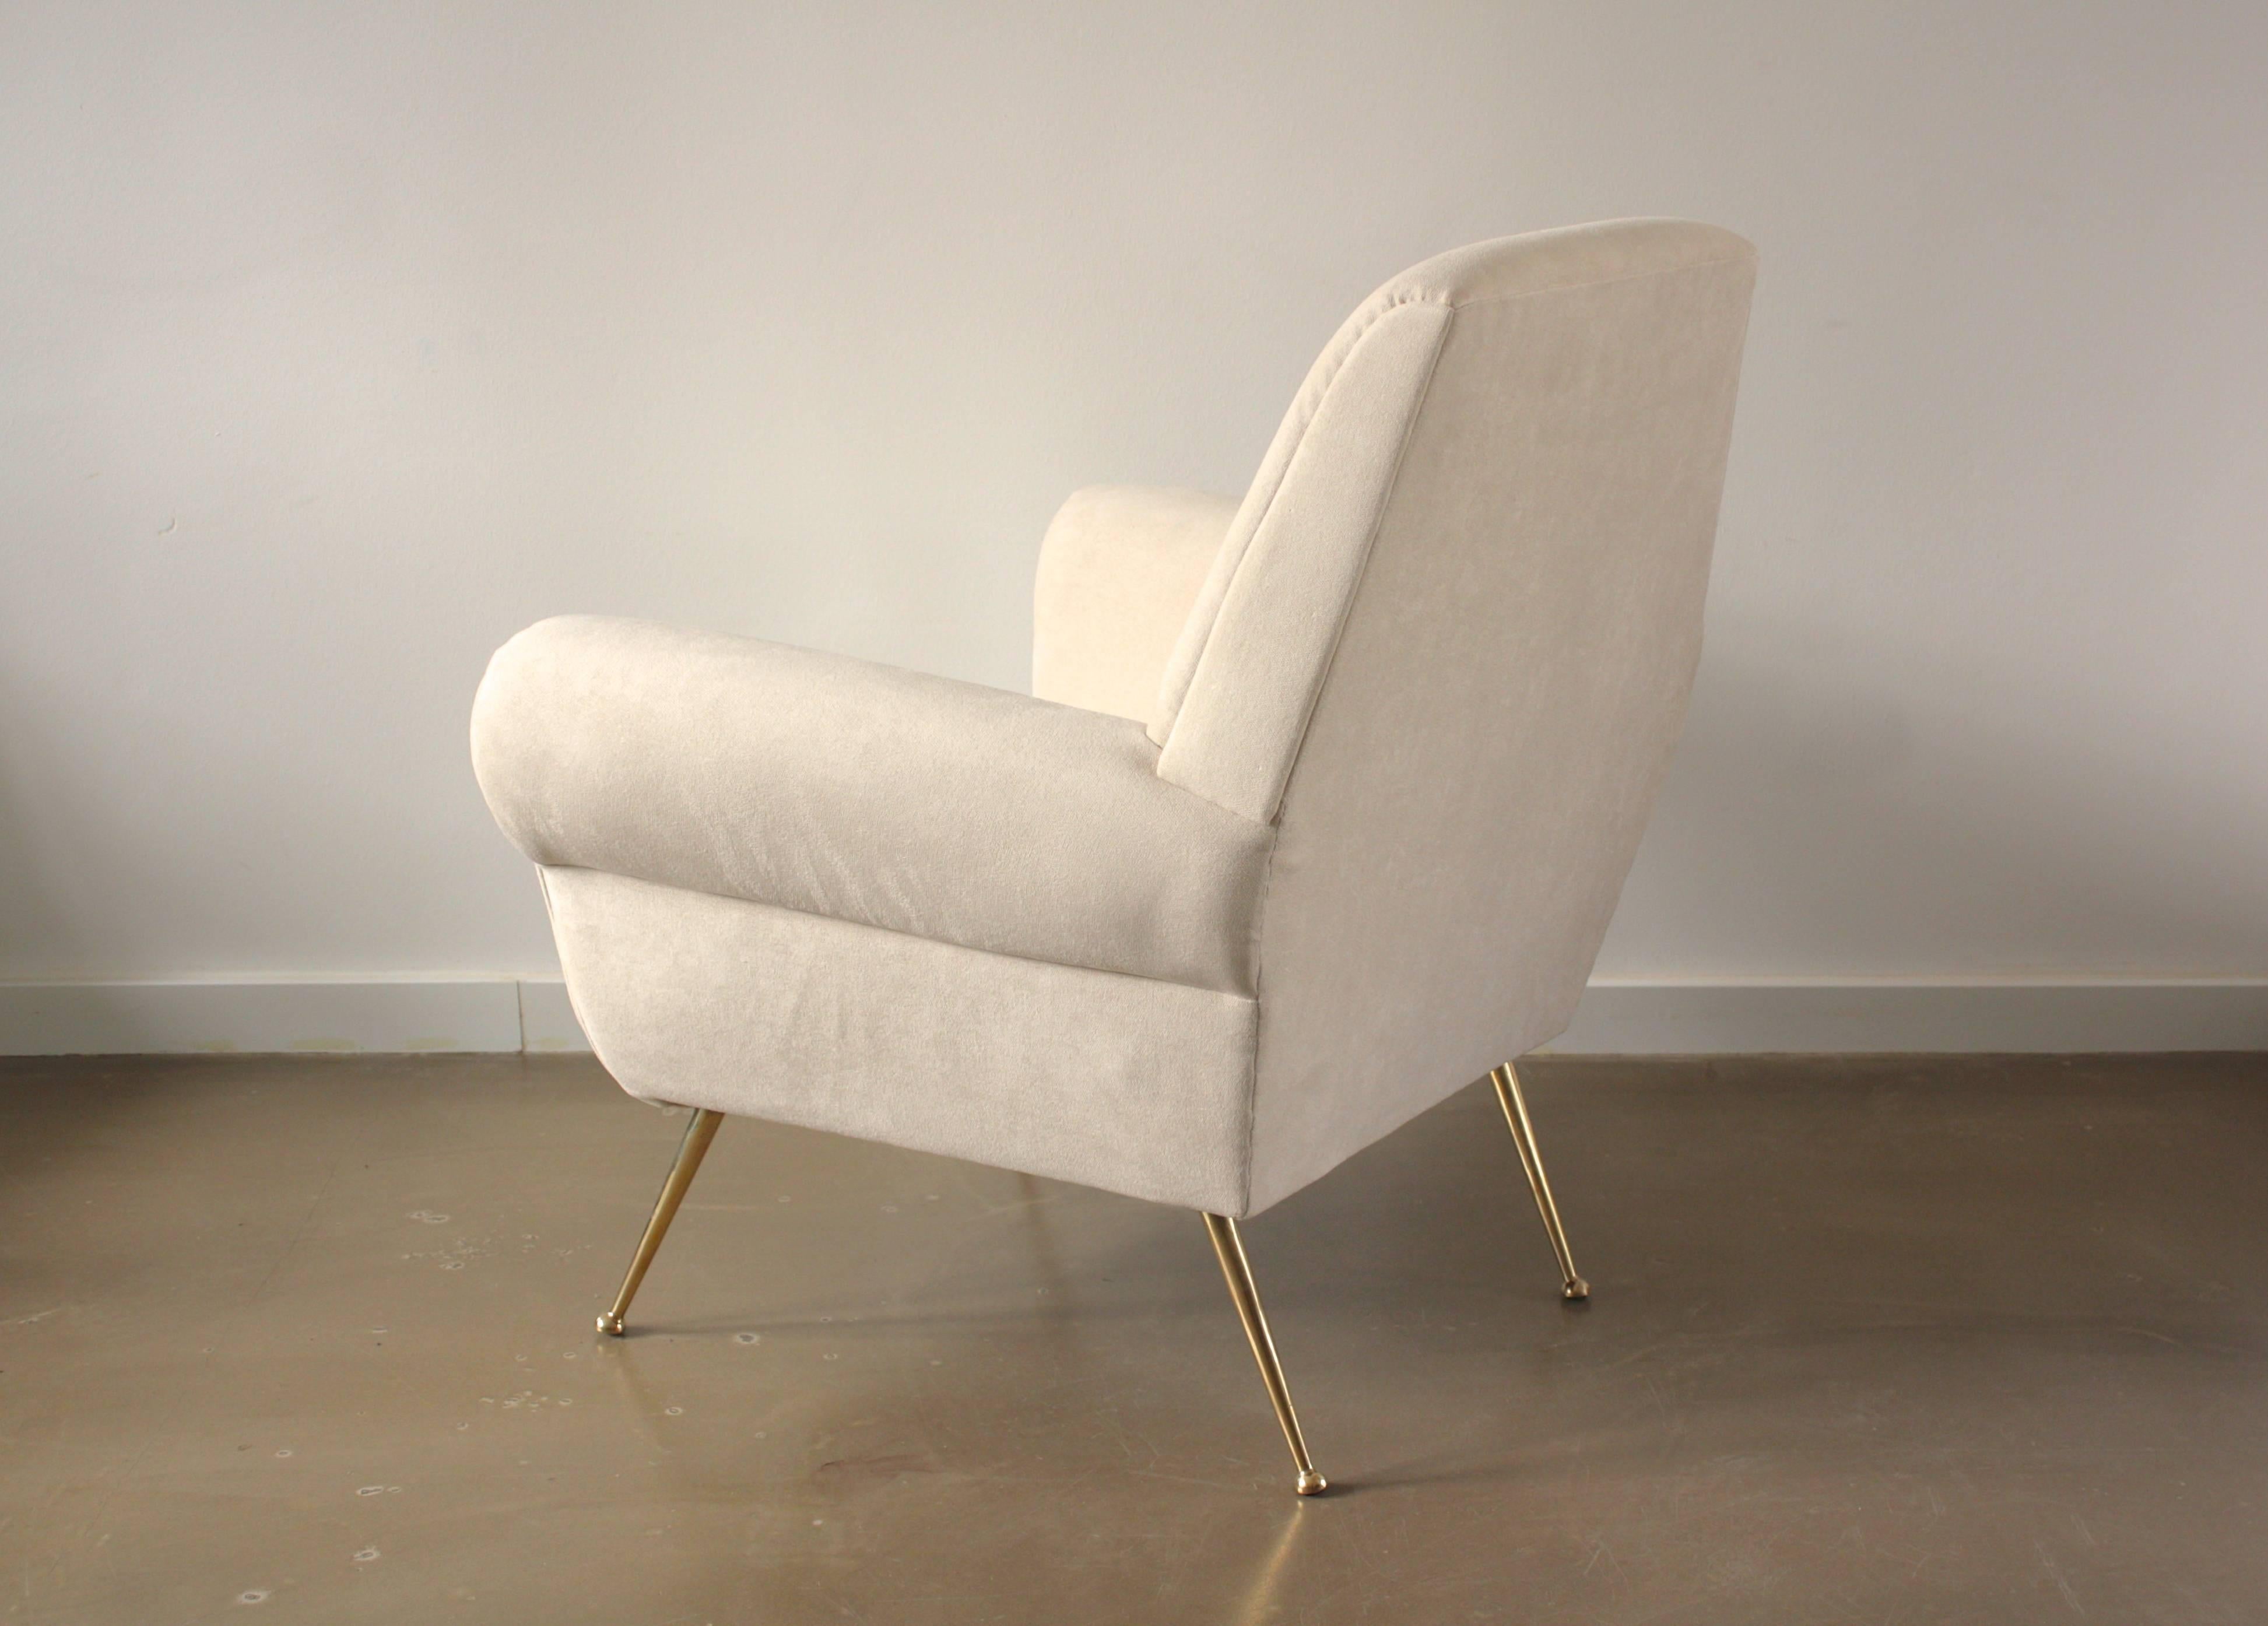 20th Century Minotti Pair of Italian White Lounge Chairs, Gigi Radice, 1950s